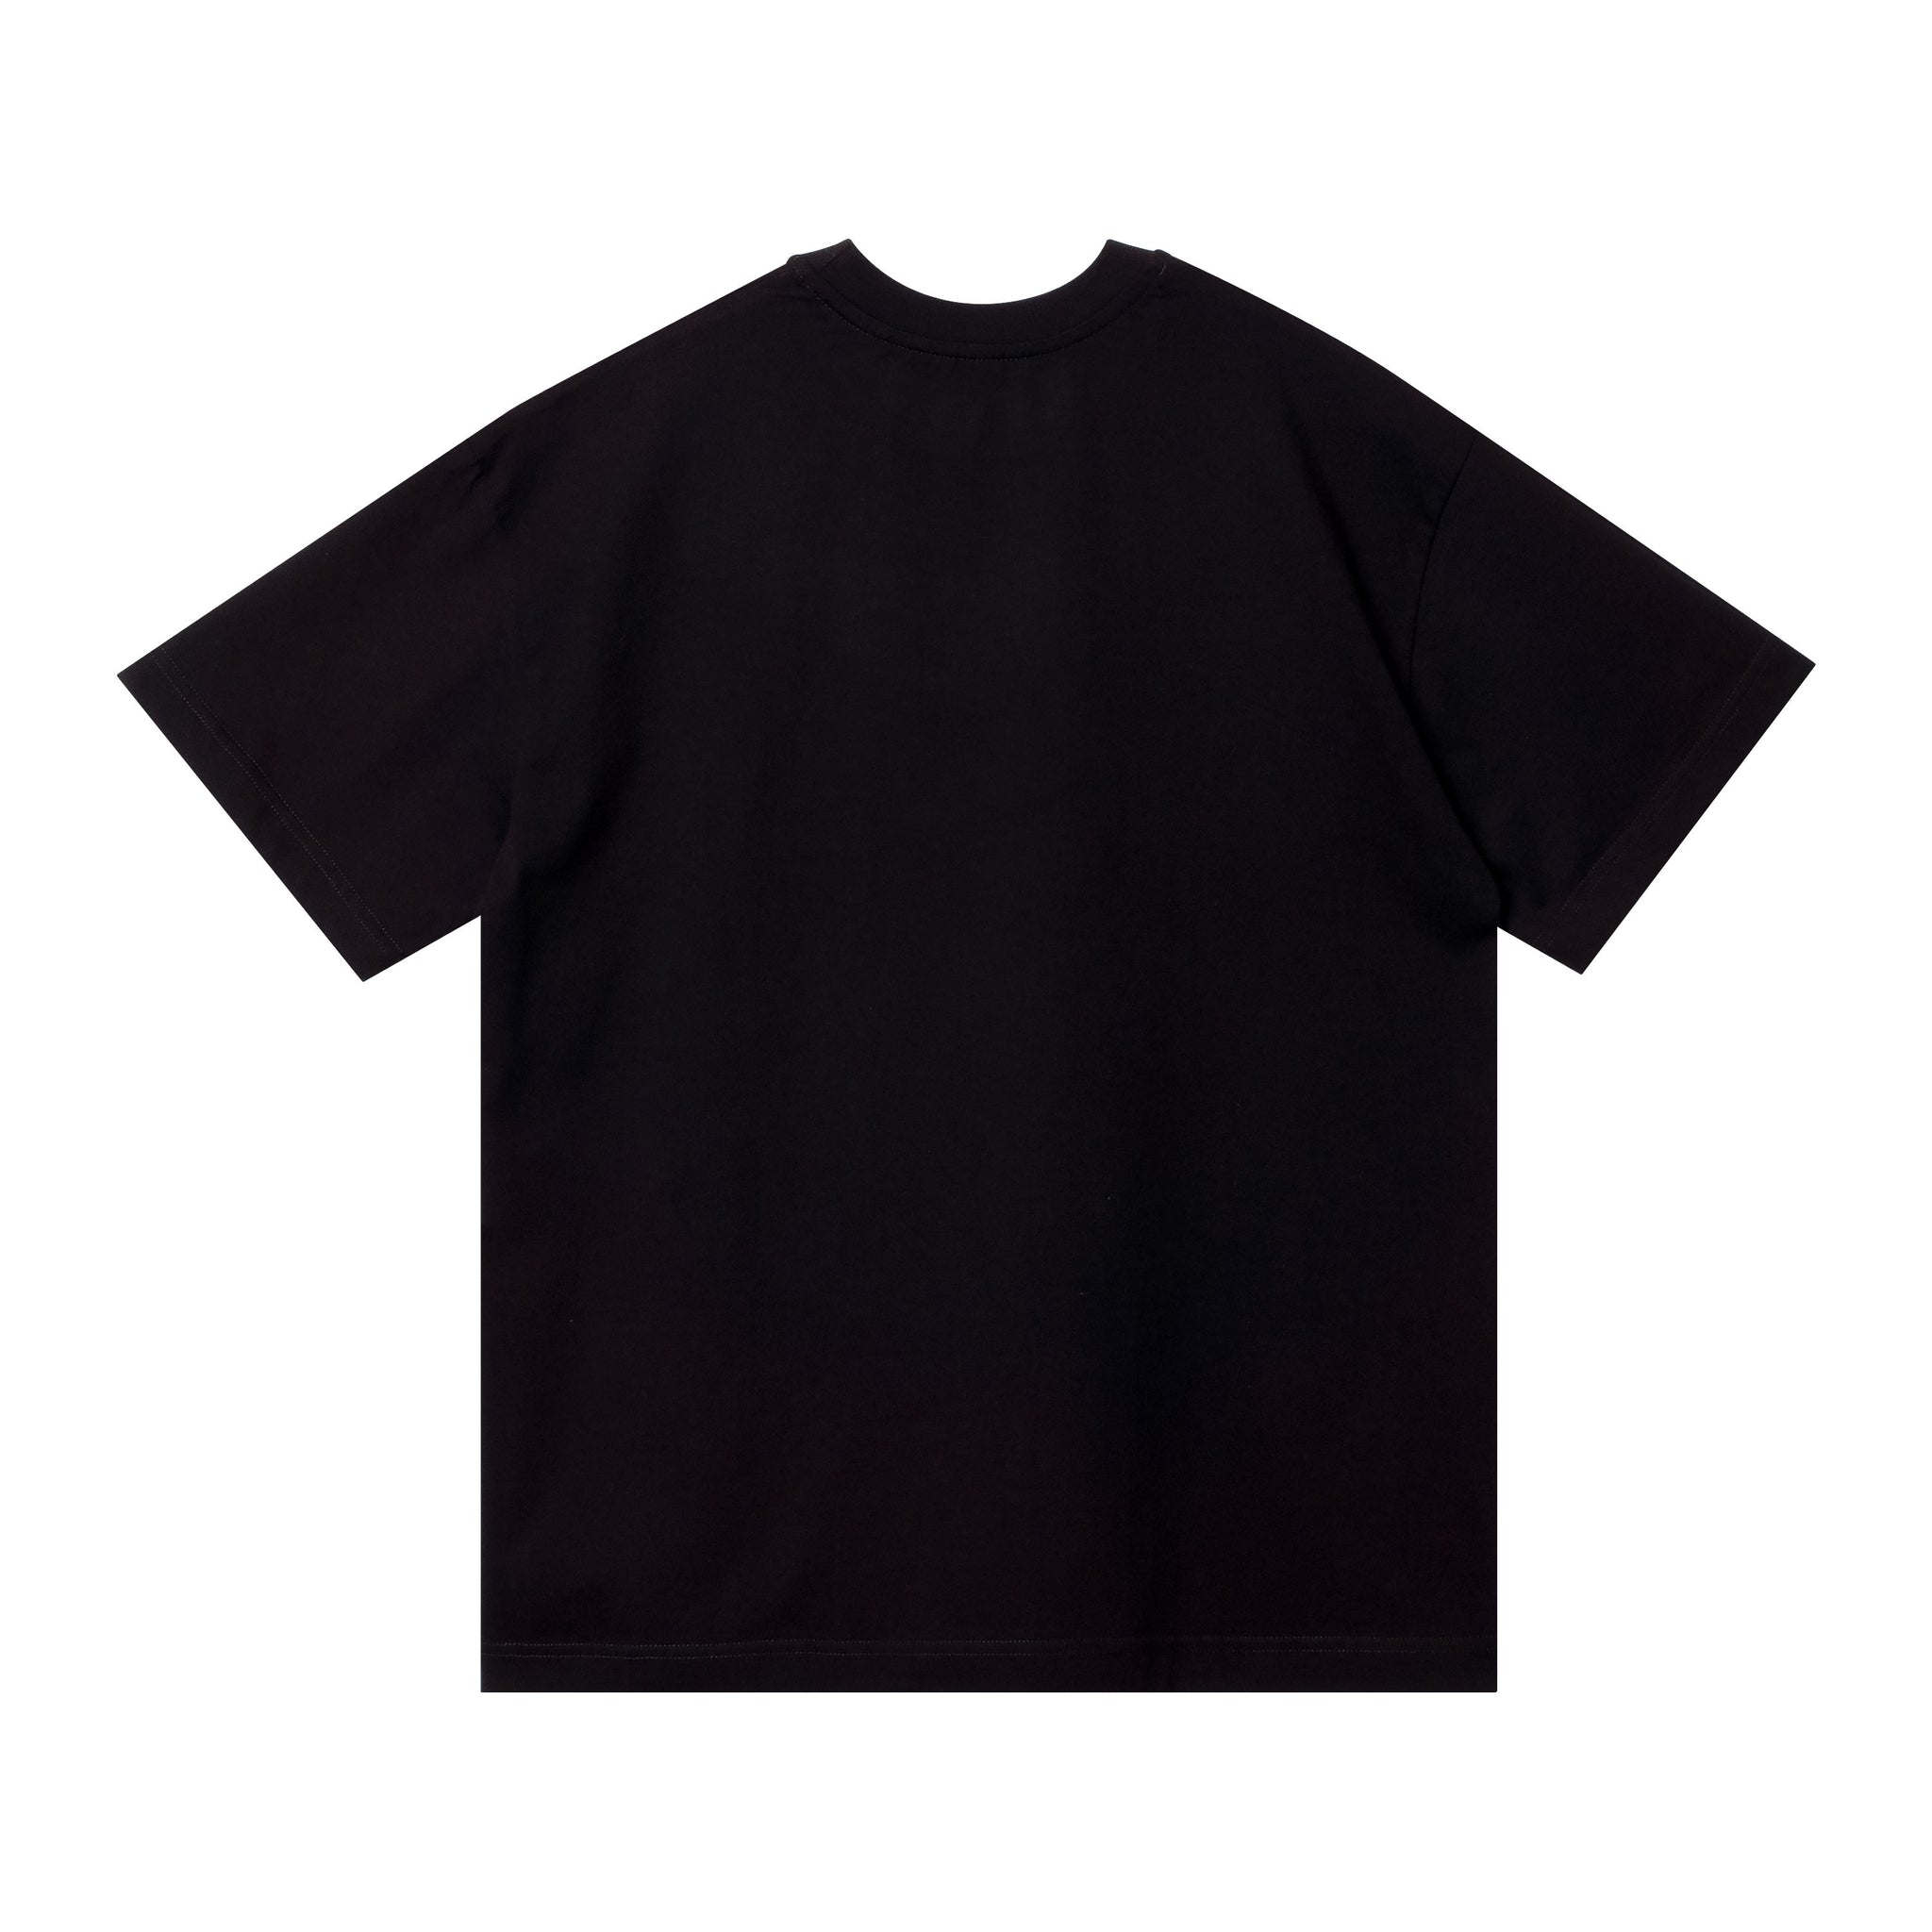 Mallboyz Black T-Shirt